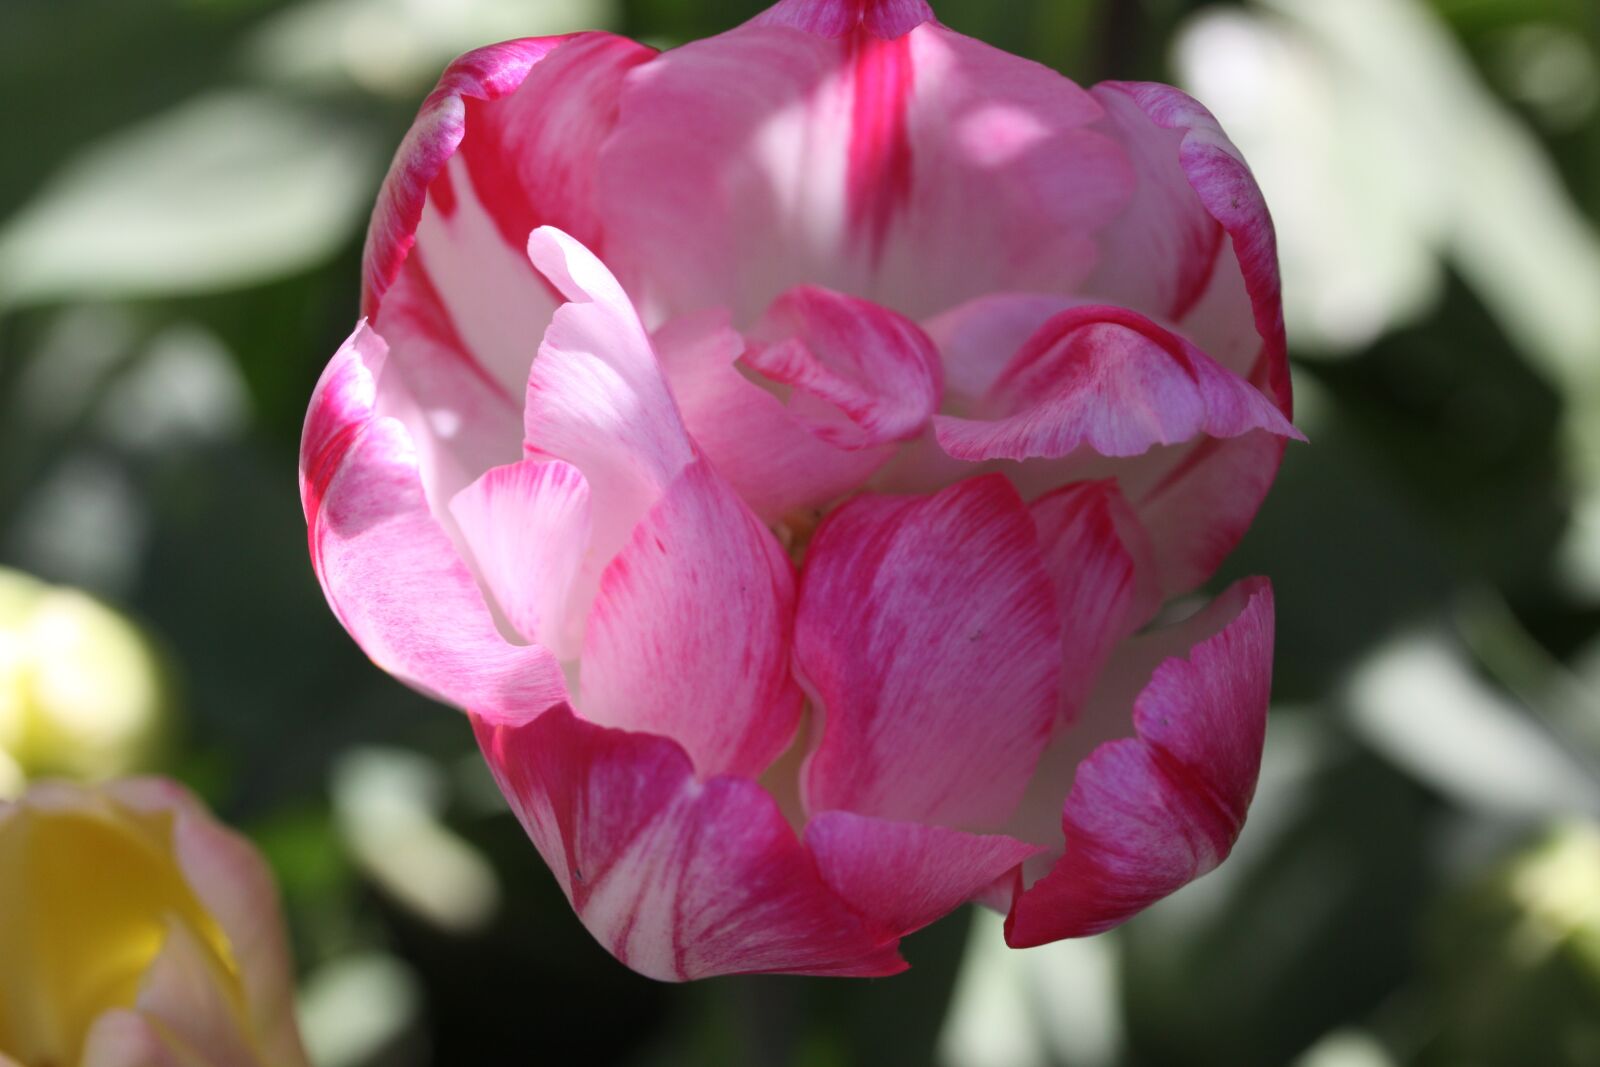 Canon EOS 50D sample photo. Tulip, sunlight, garden photography